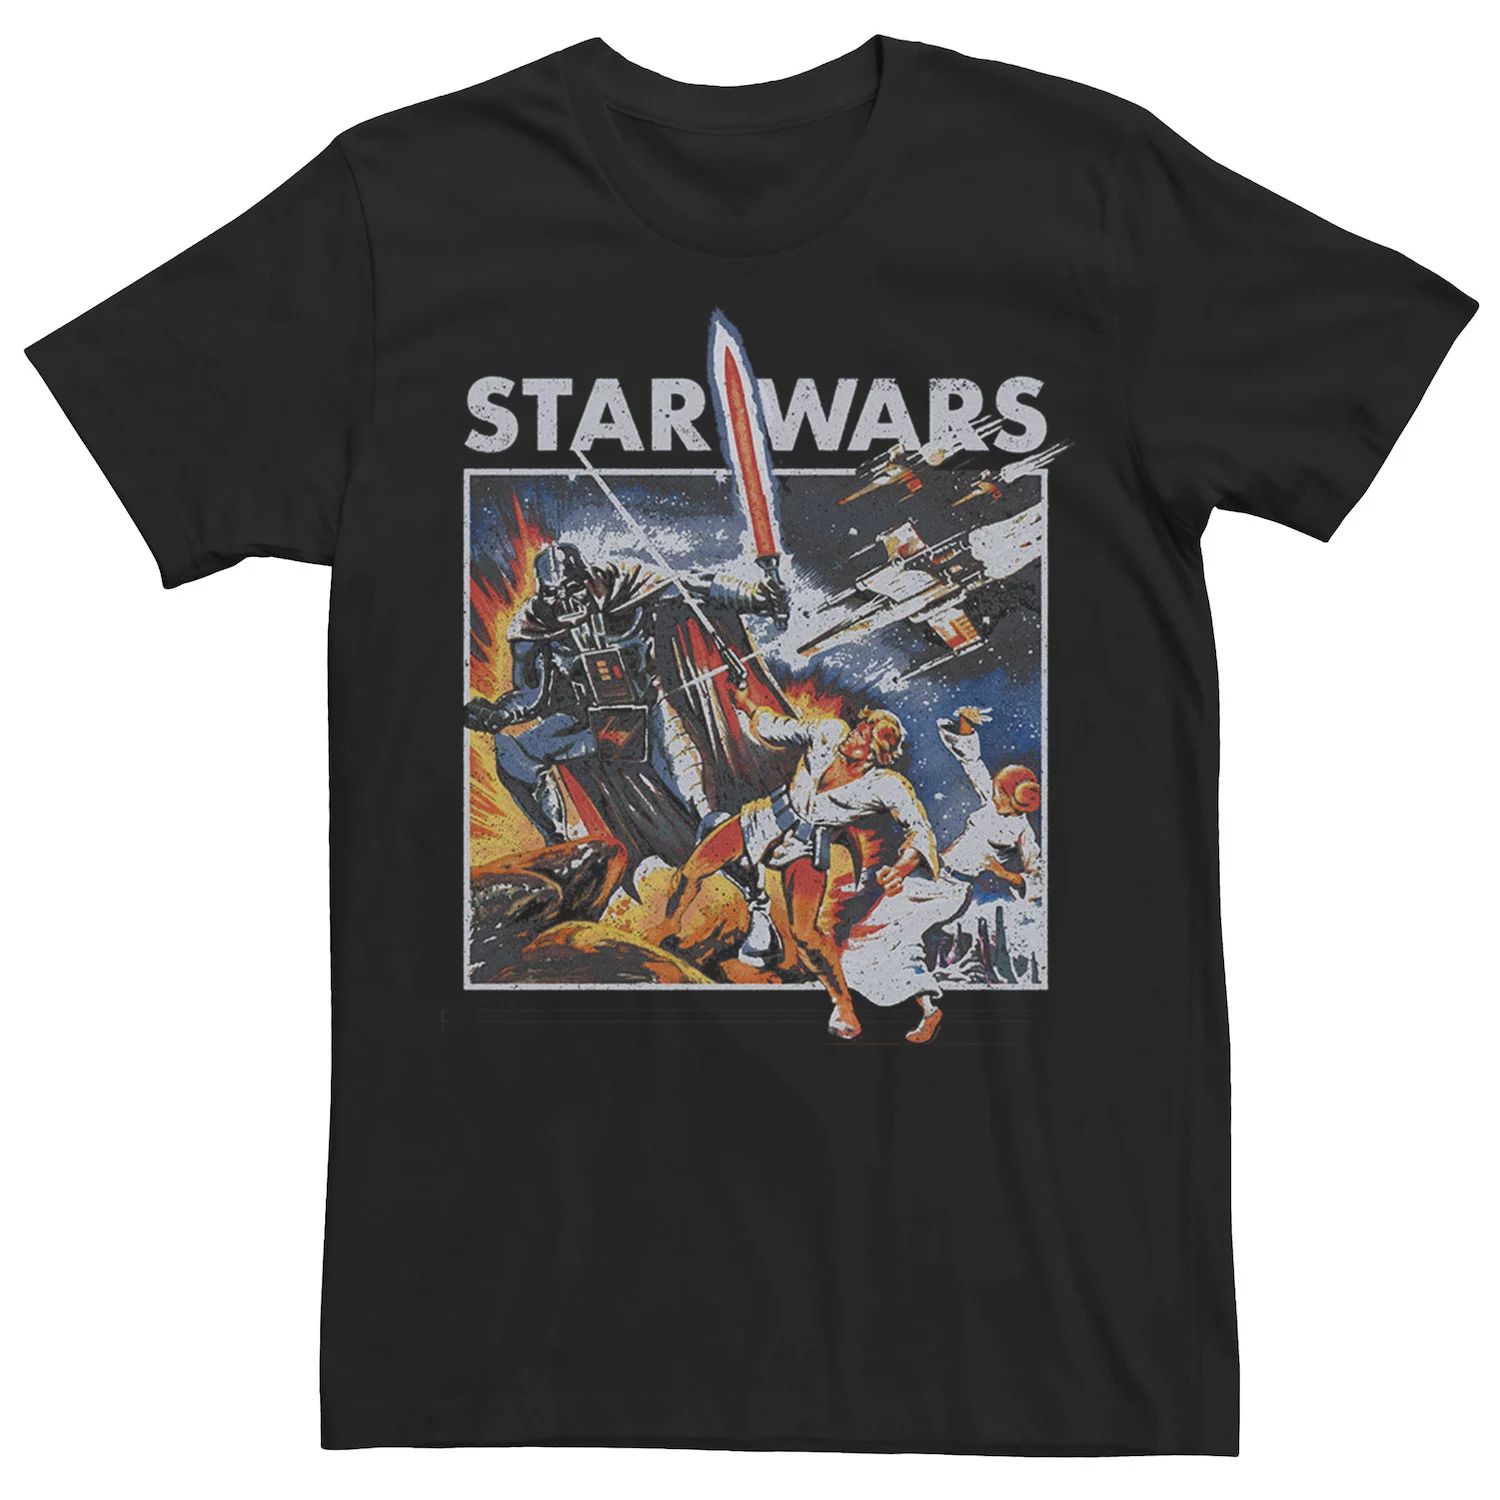 Мужская винтажная футболка с графическим плакатом и боевым плакатом Star Wars цена и фото